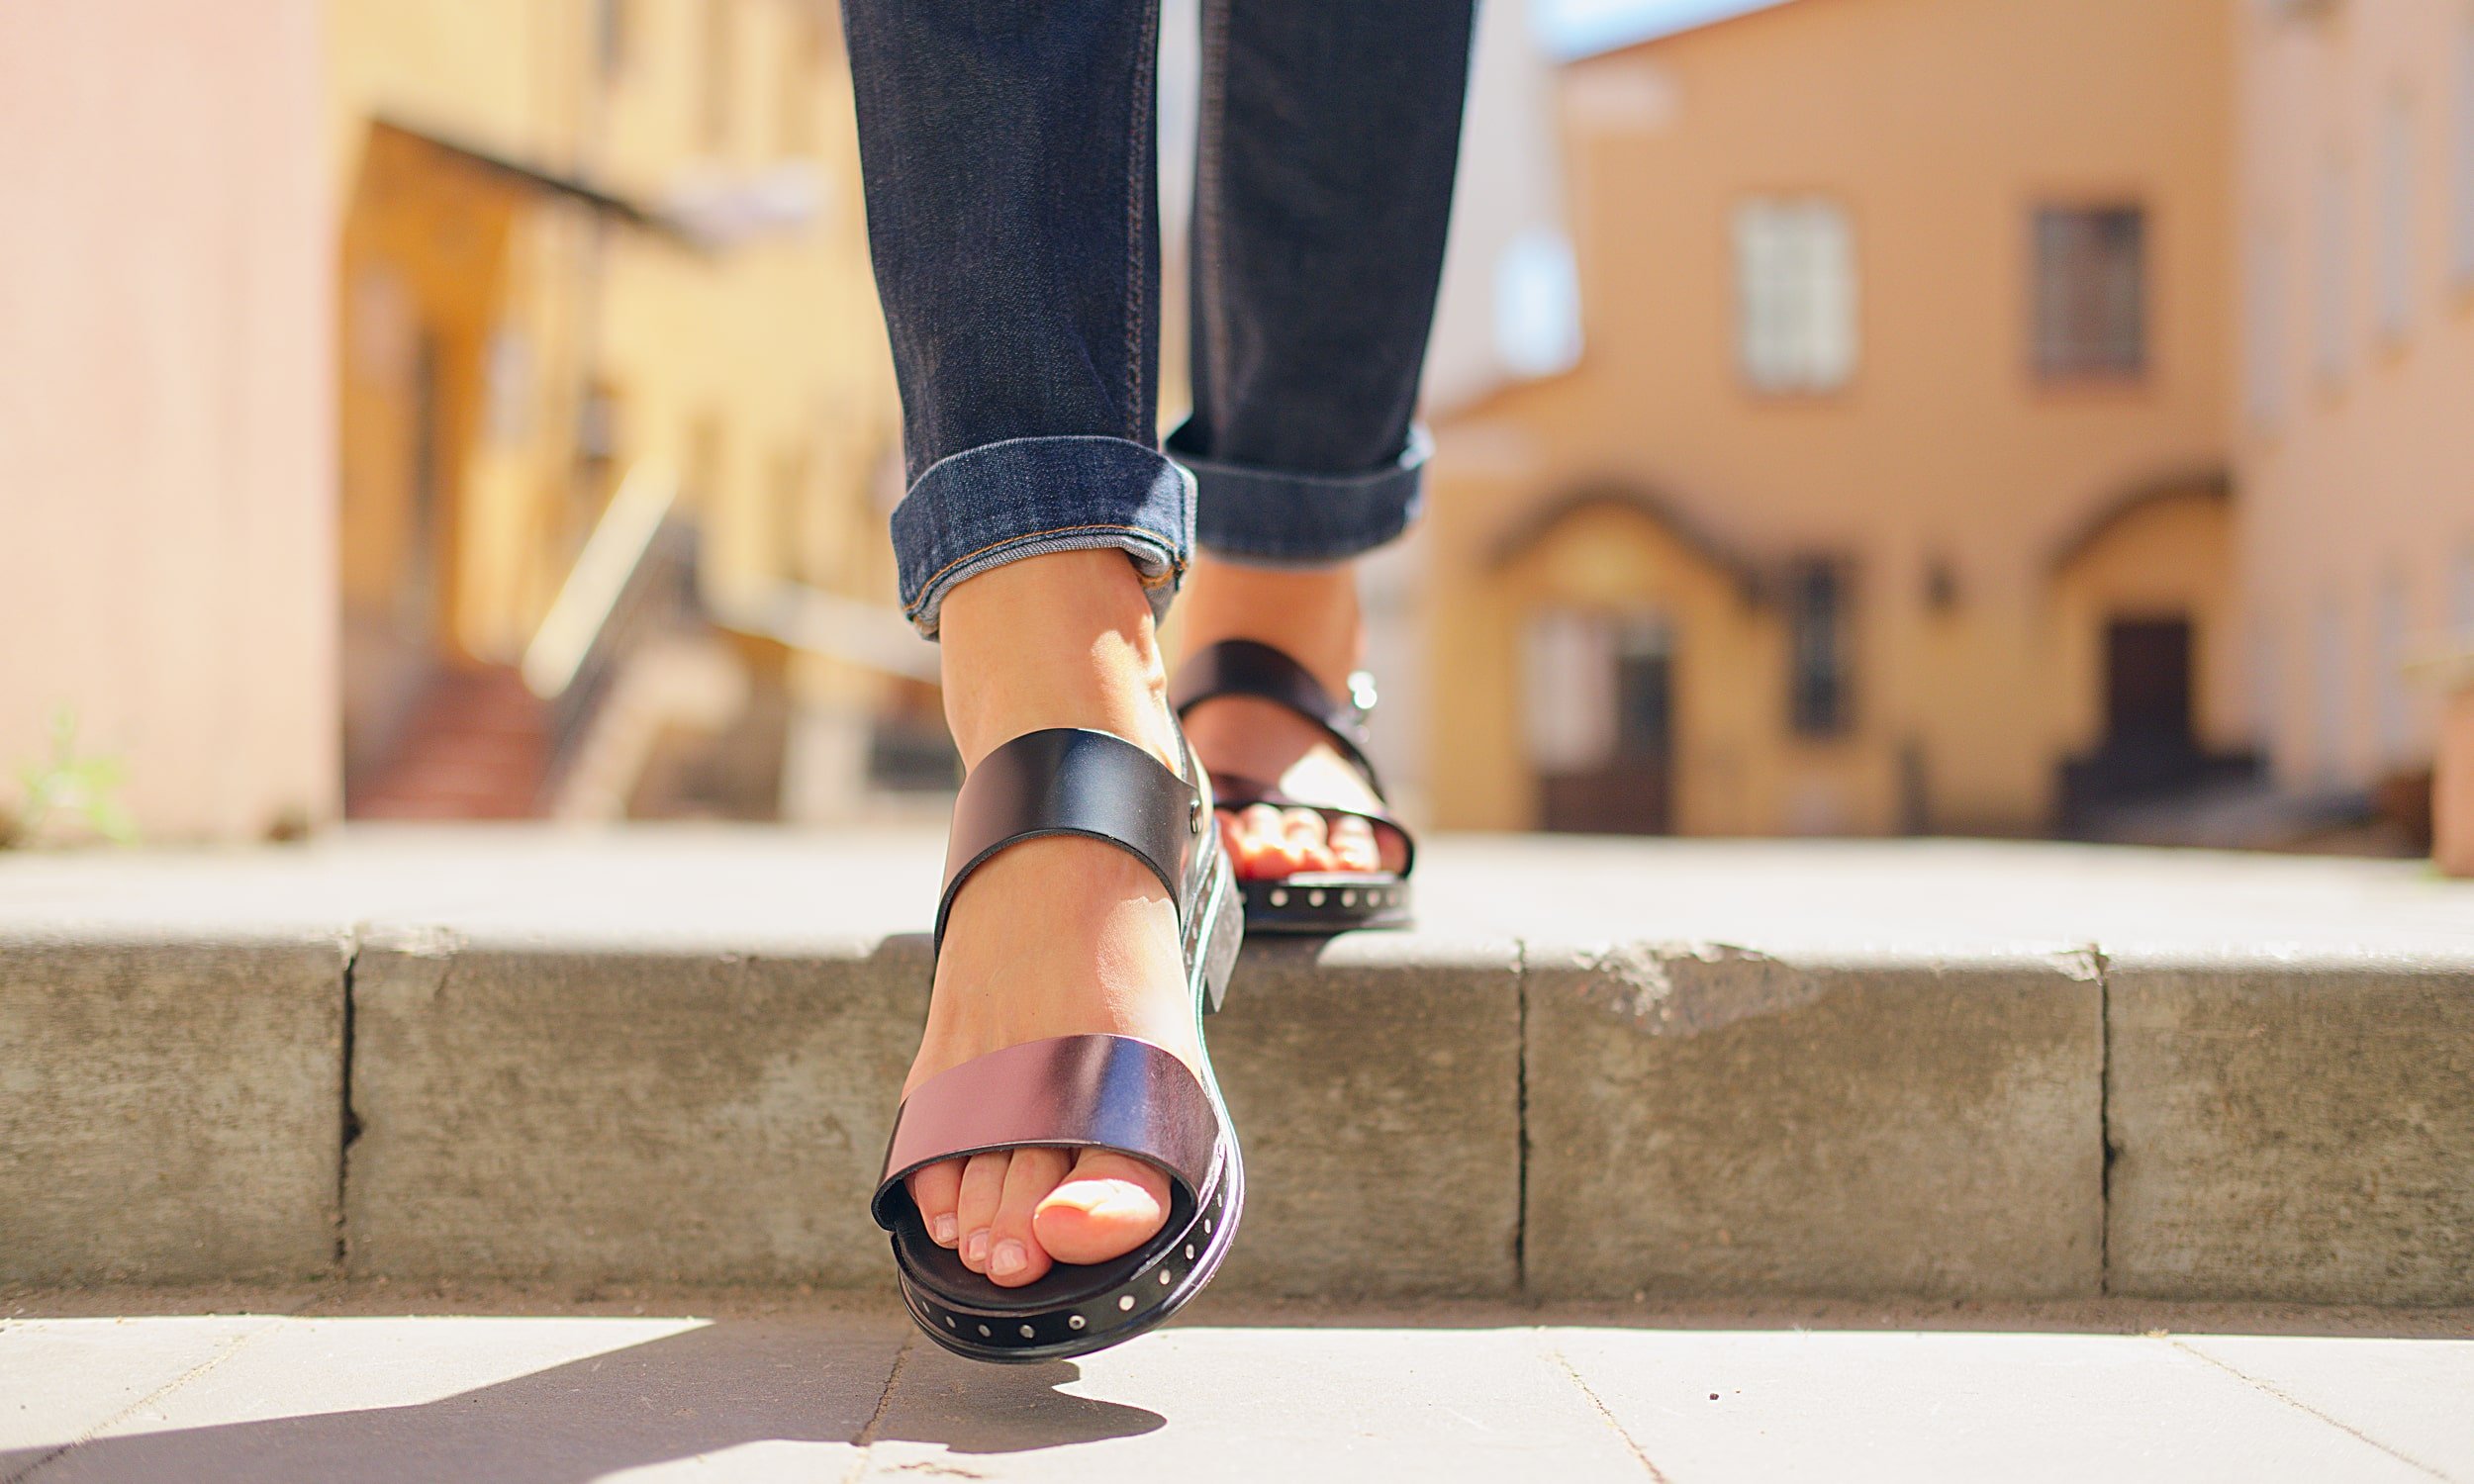 sieviete pastaigajas pilseta sandales